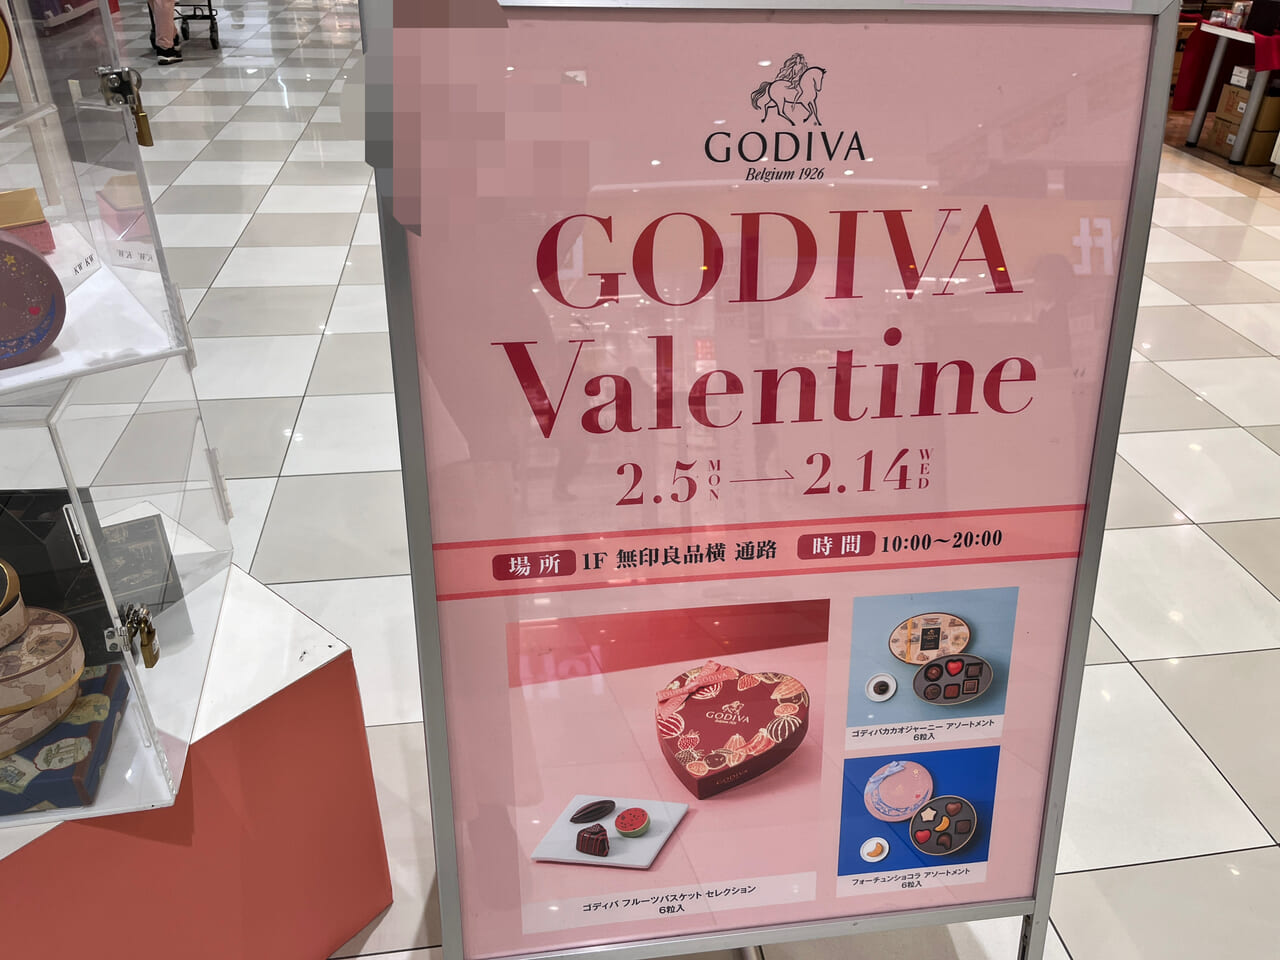 「GODIVA Valentine」の開催告知のポスター